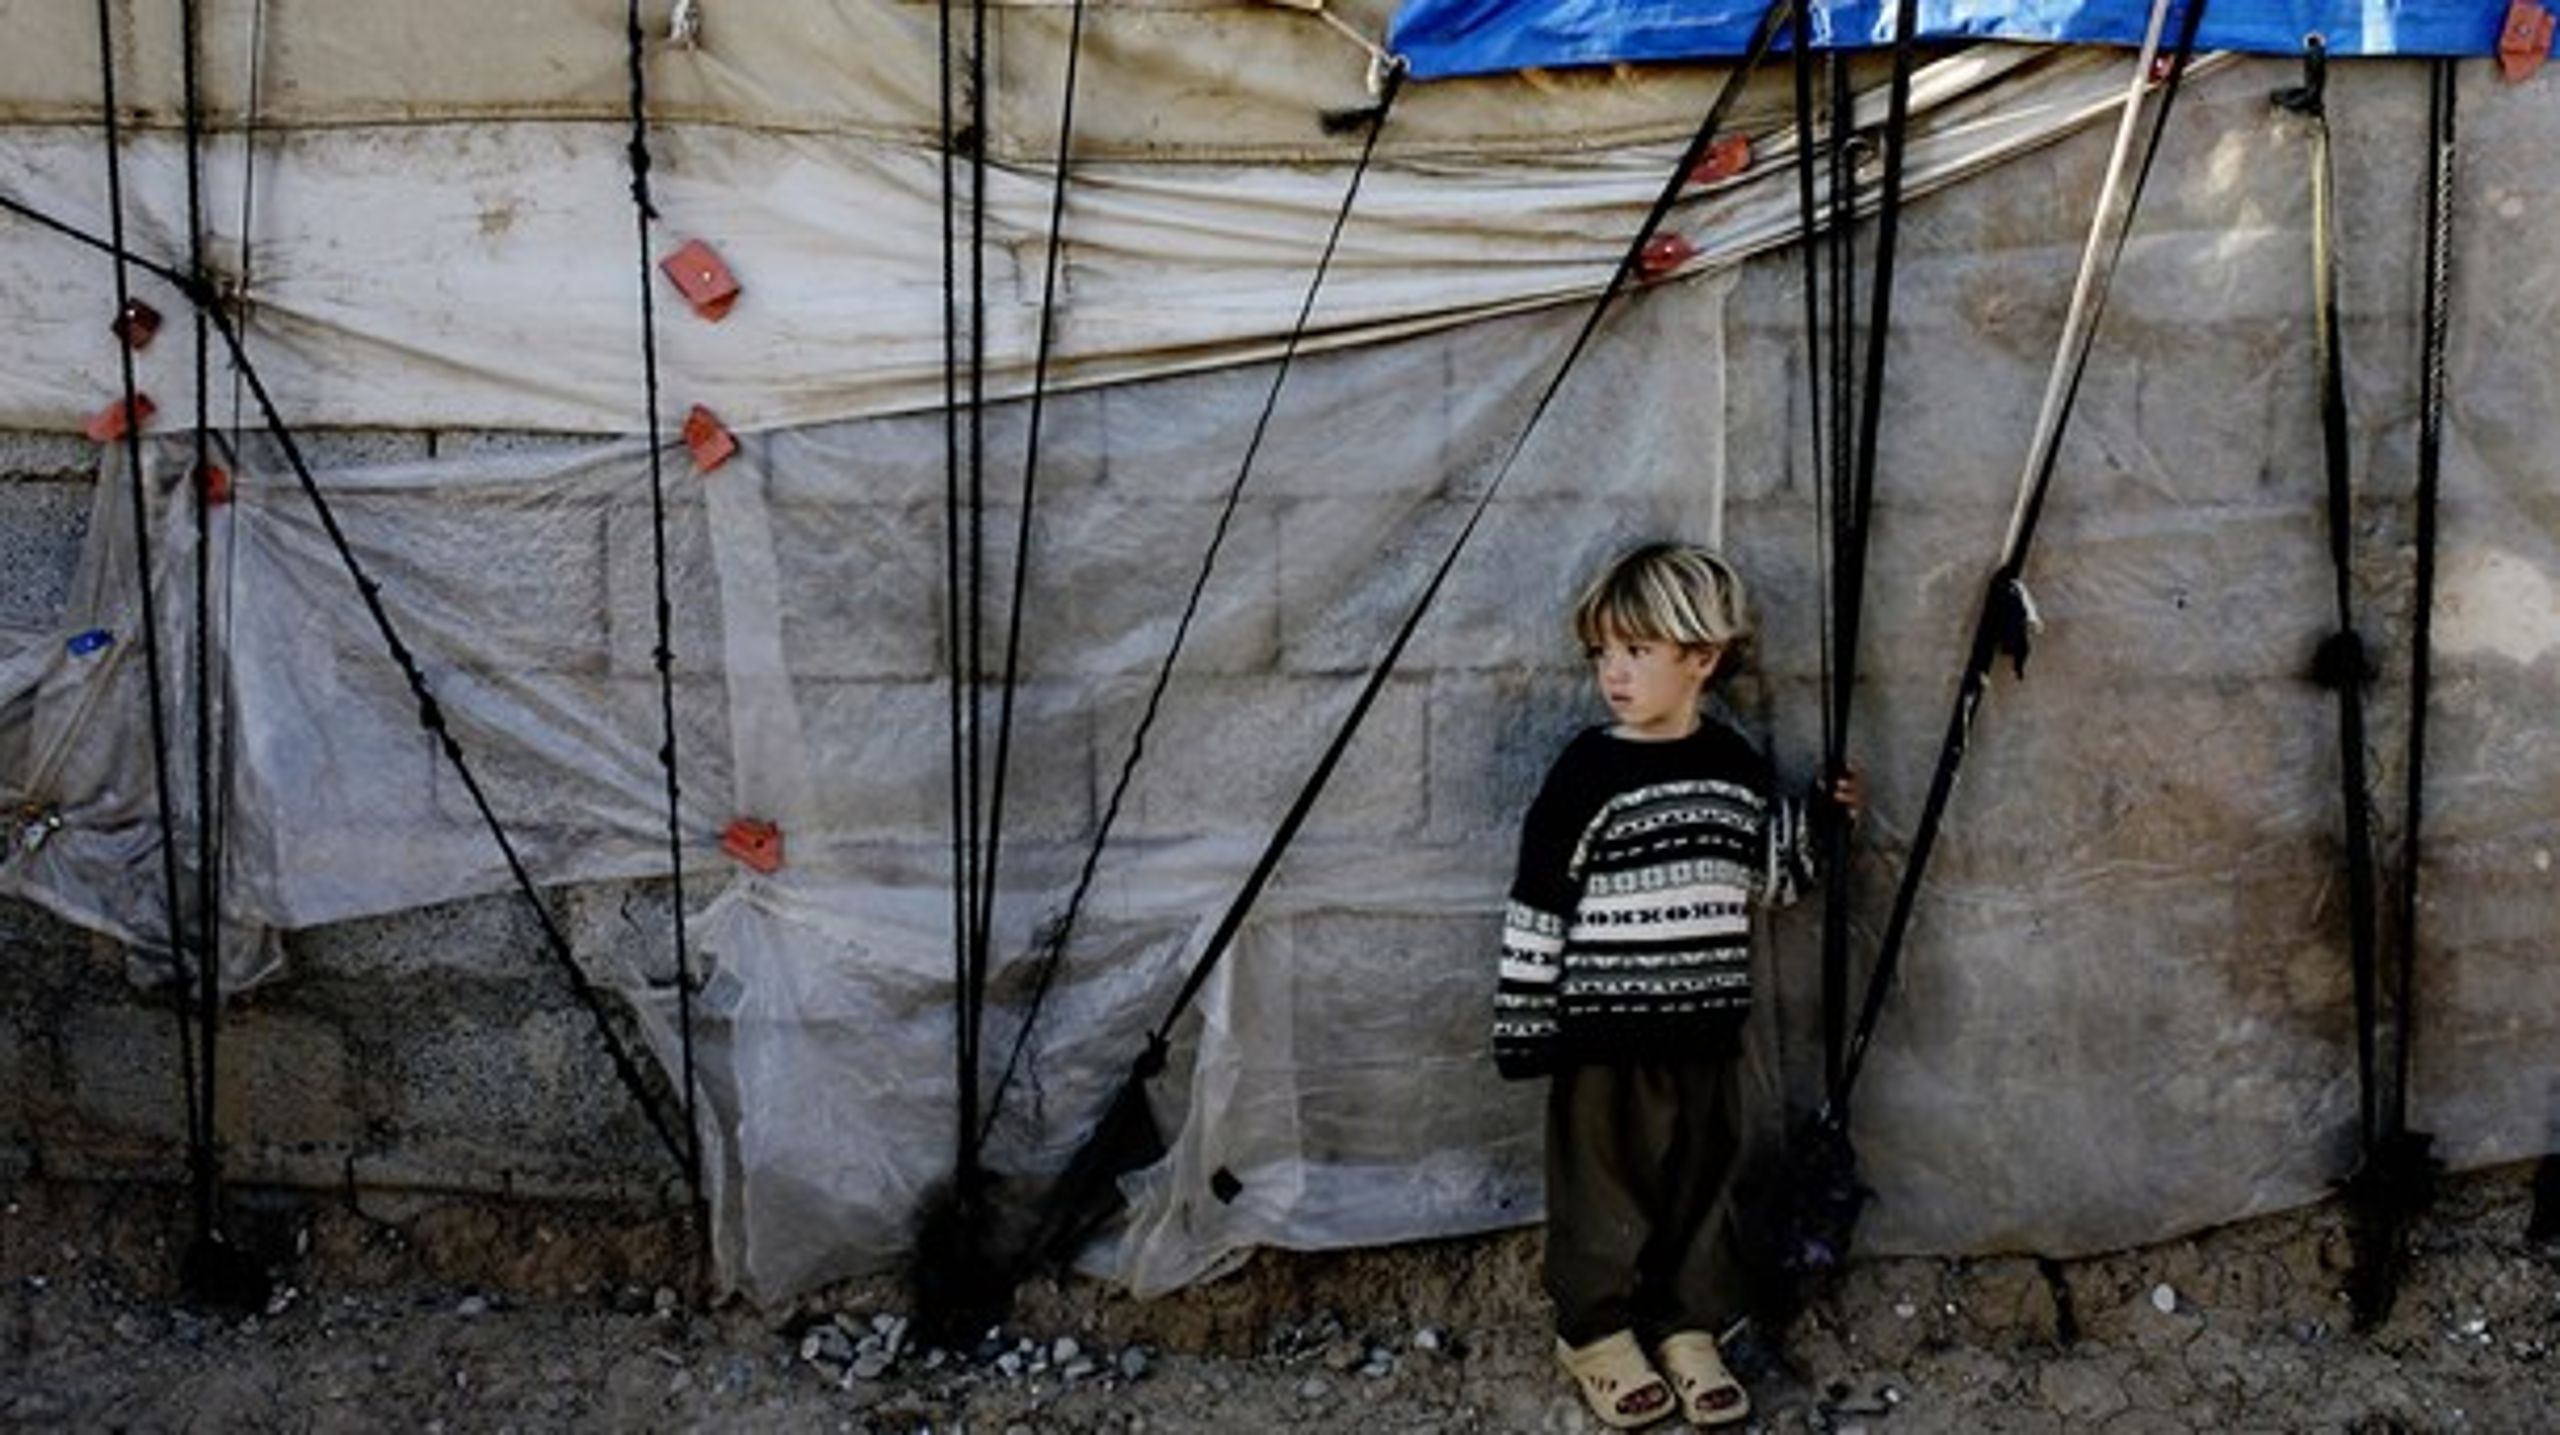 Trods bekæmpelsen af IS lever internt fordrevne stadig under kummerlige forhold, skriver Trine Christensen, Amnesty International Danmark (Billedet: barn i flygtningelejr i Irak).